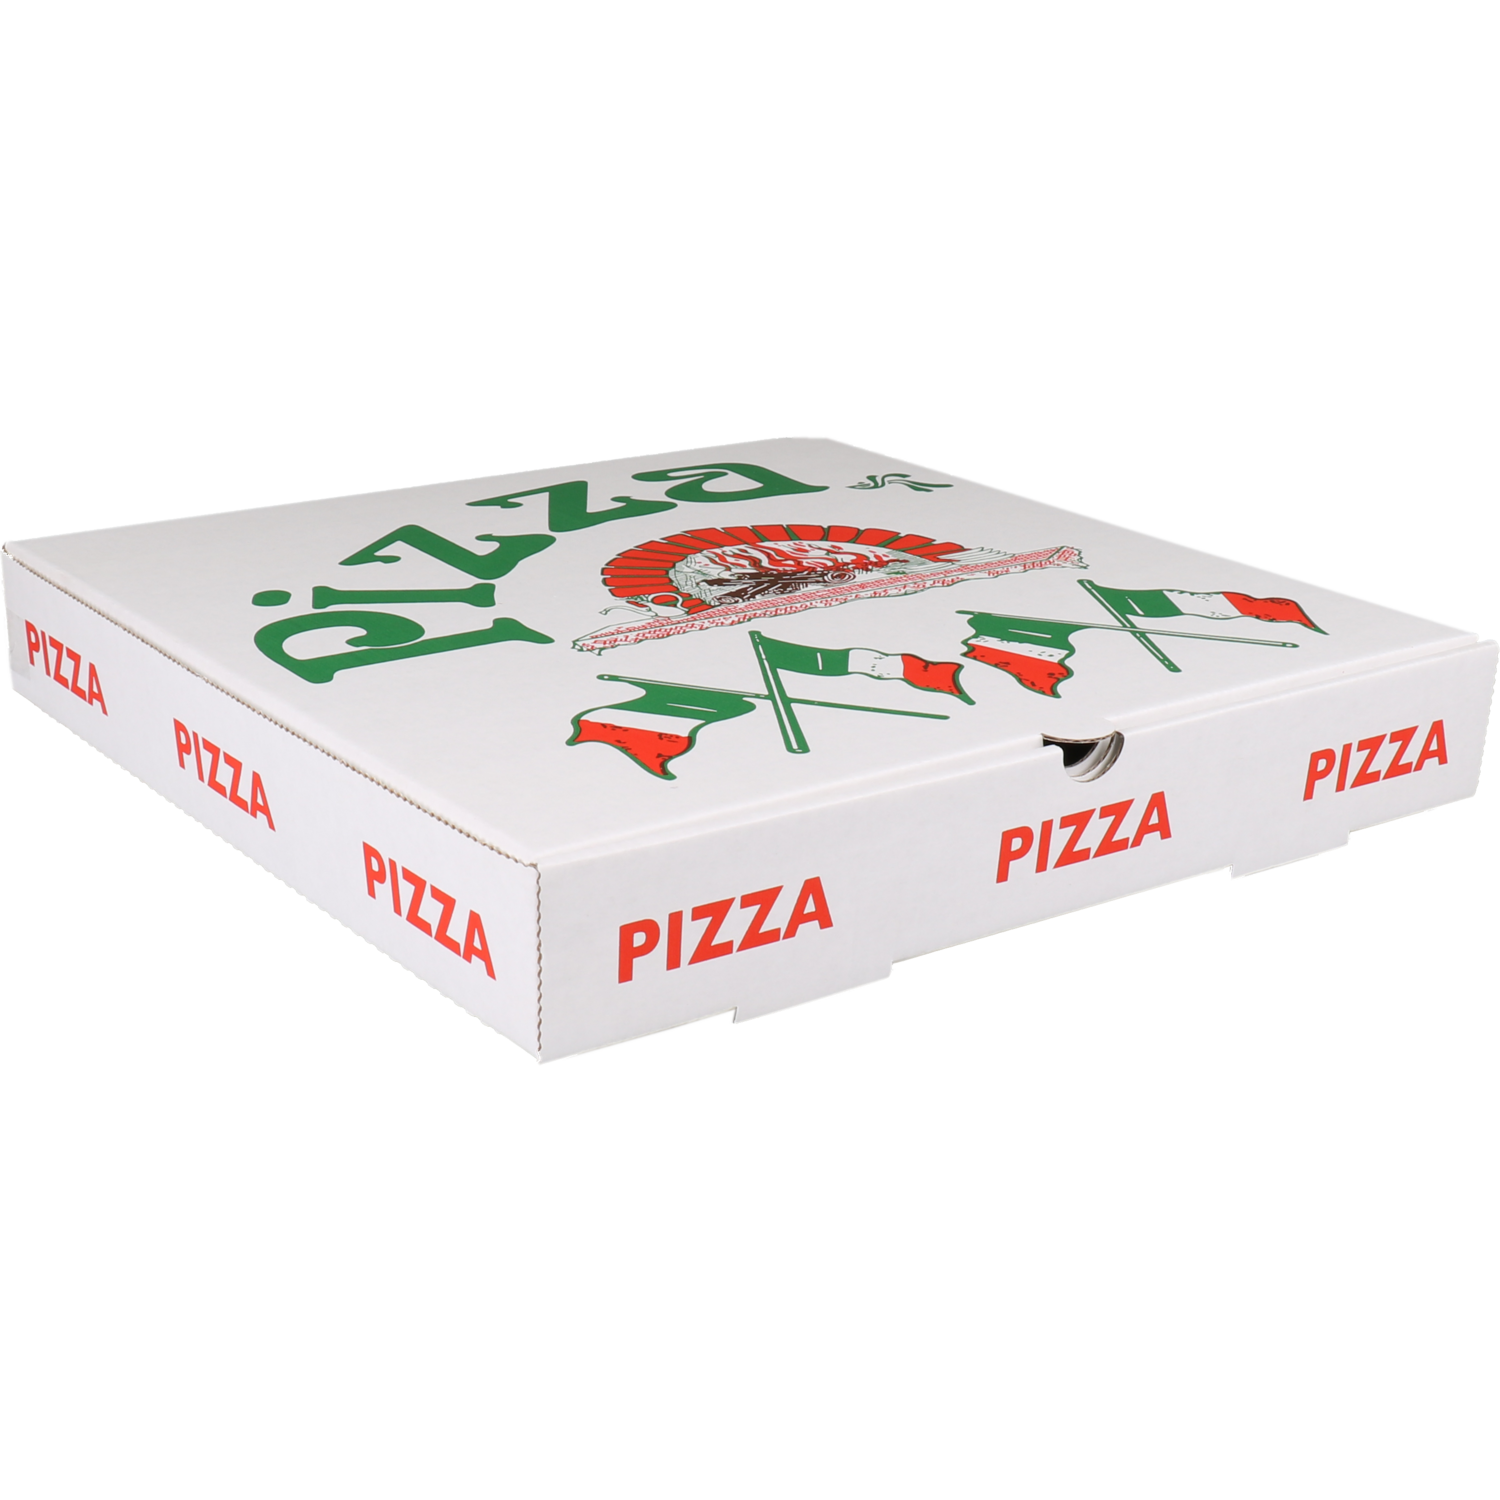  Pizzaschachtel, wellpappe, 30x30x4.5cm, americano, weiß 1